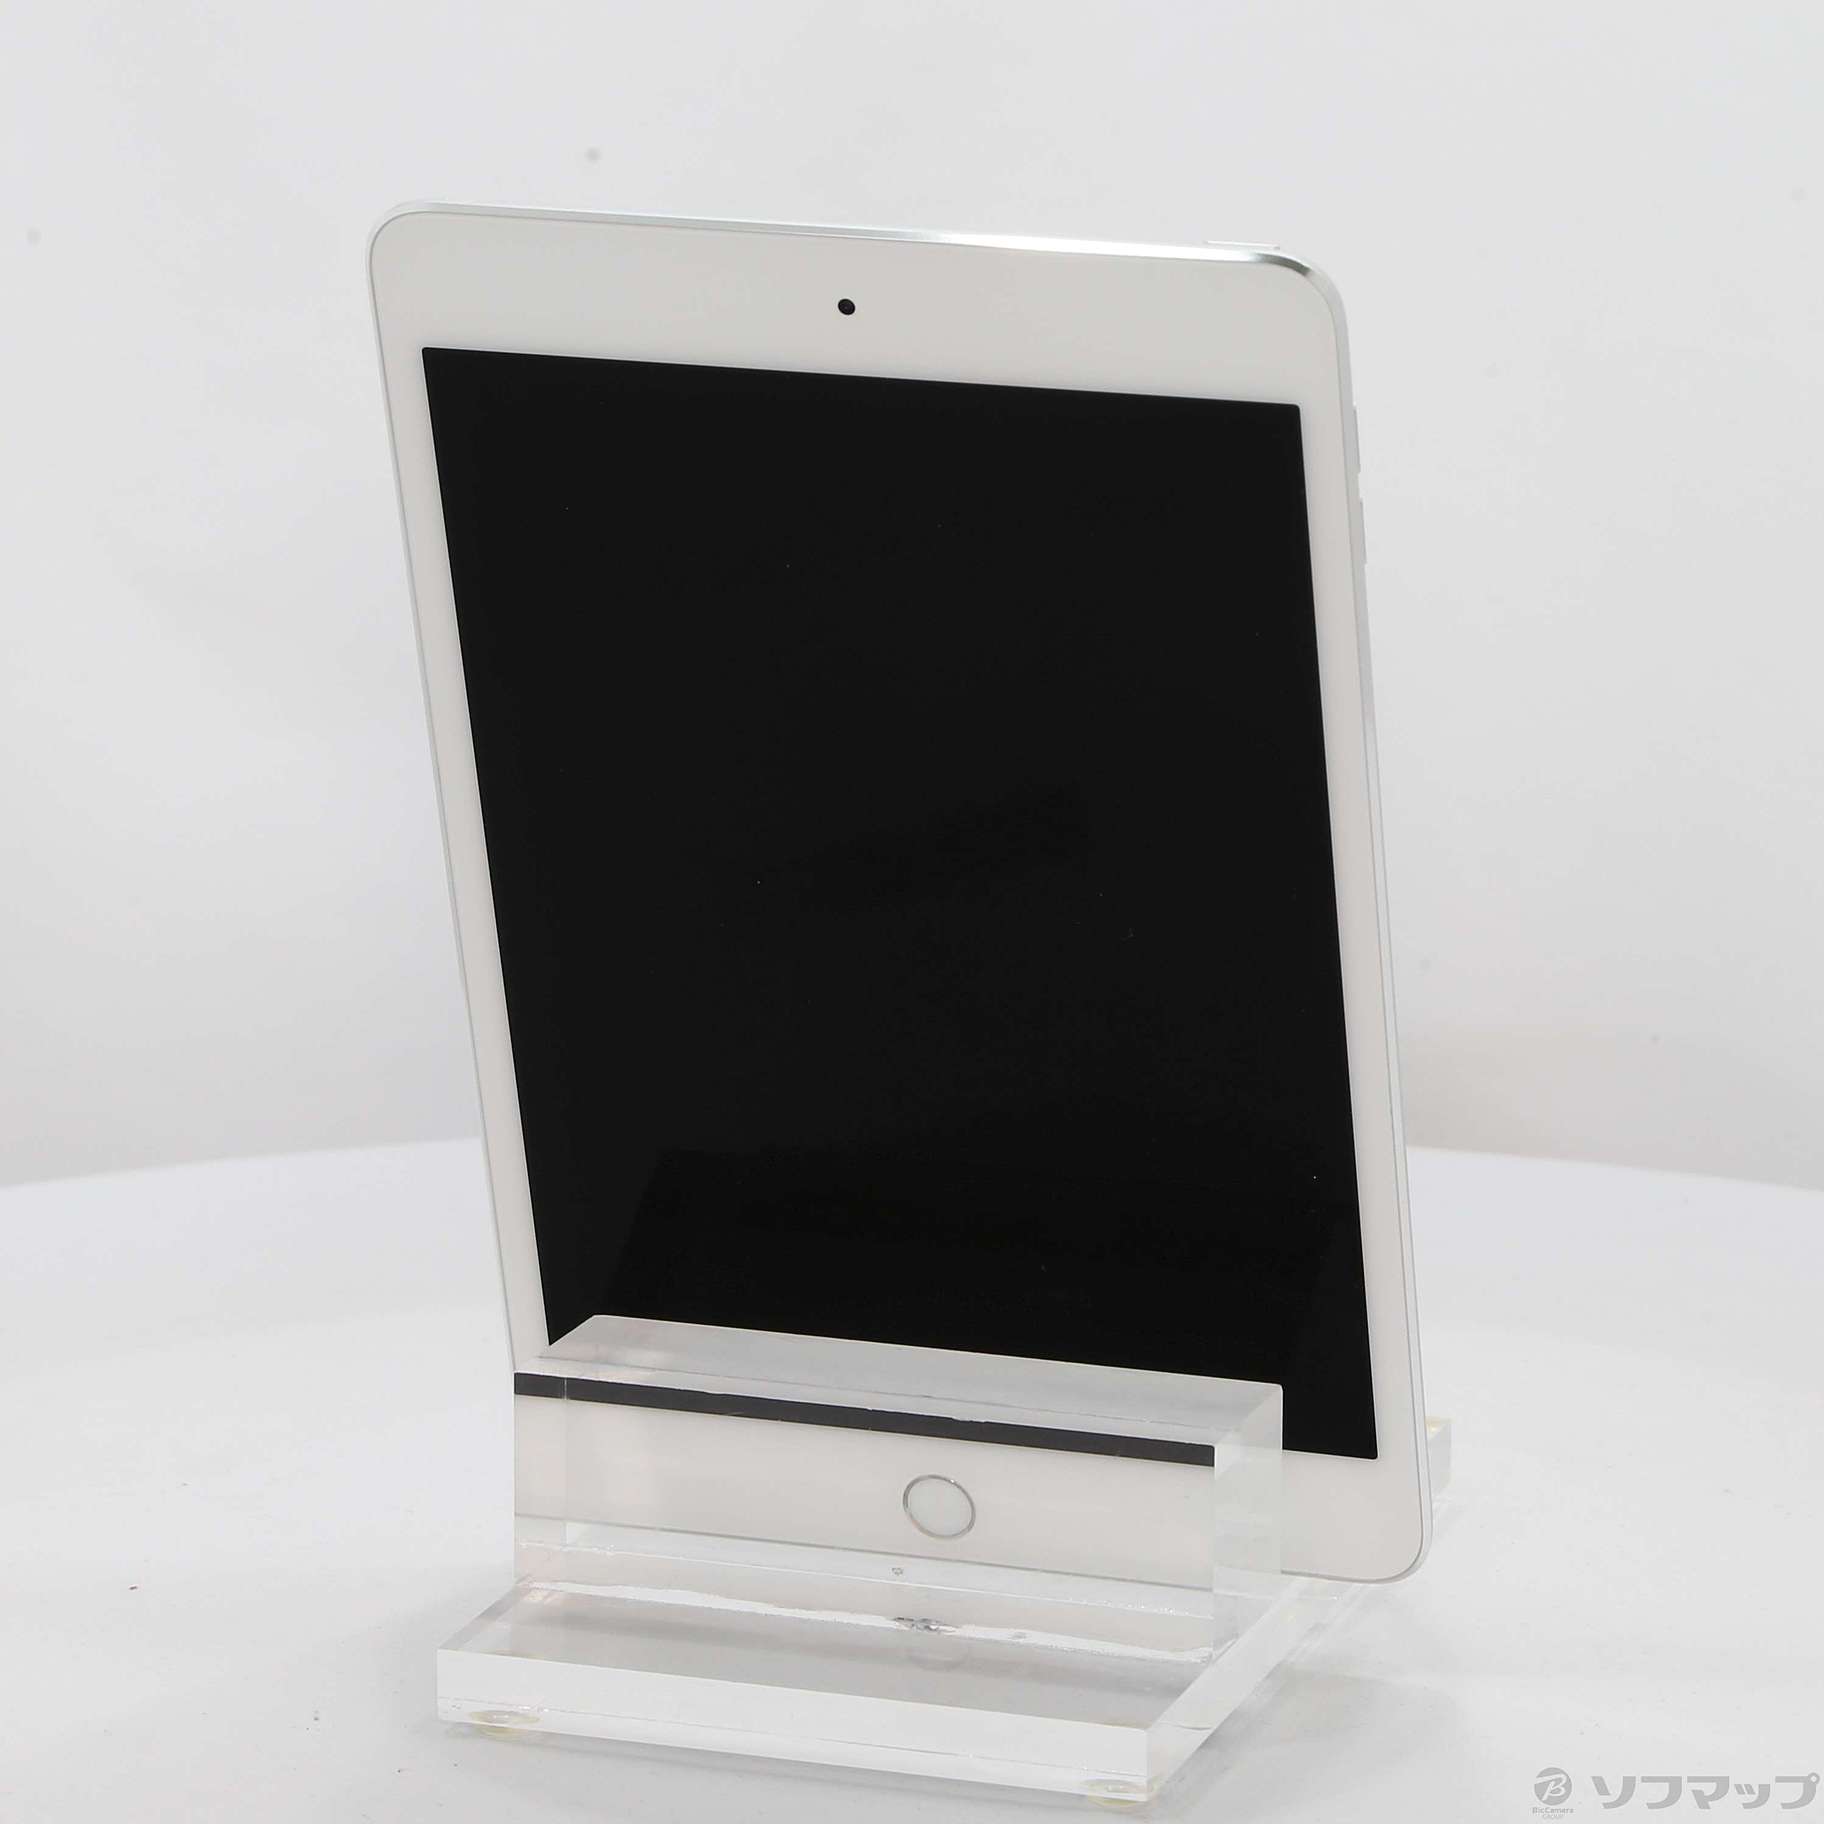 iPad mini4 Wifiモデル 128GBシルバー MK9P2J/K-